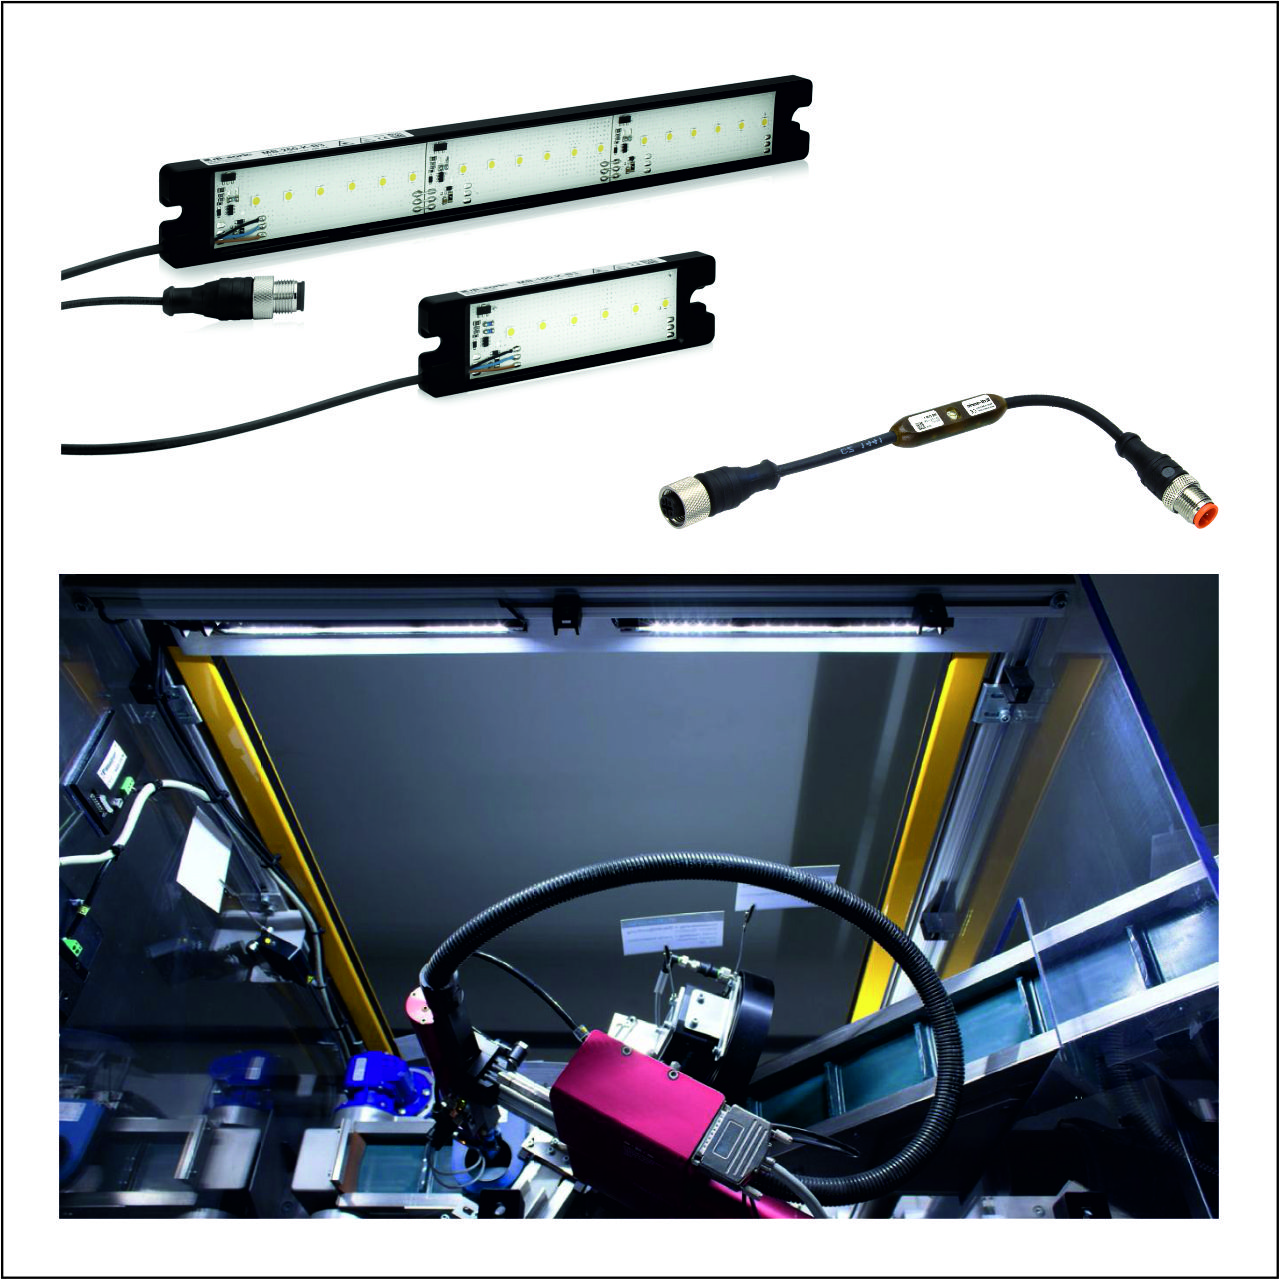 Obr 3 LED svetlá MB-100 a MB-250 na osvetľovanie pracovných priestorov, stmievač MB-DIM1 a aplikácia 2 ks MB-250 osvetľujúce pracovnú plochu